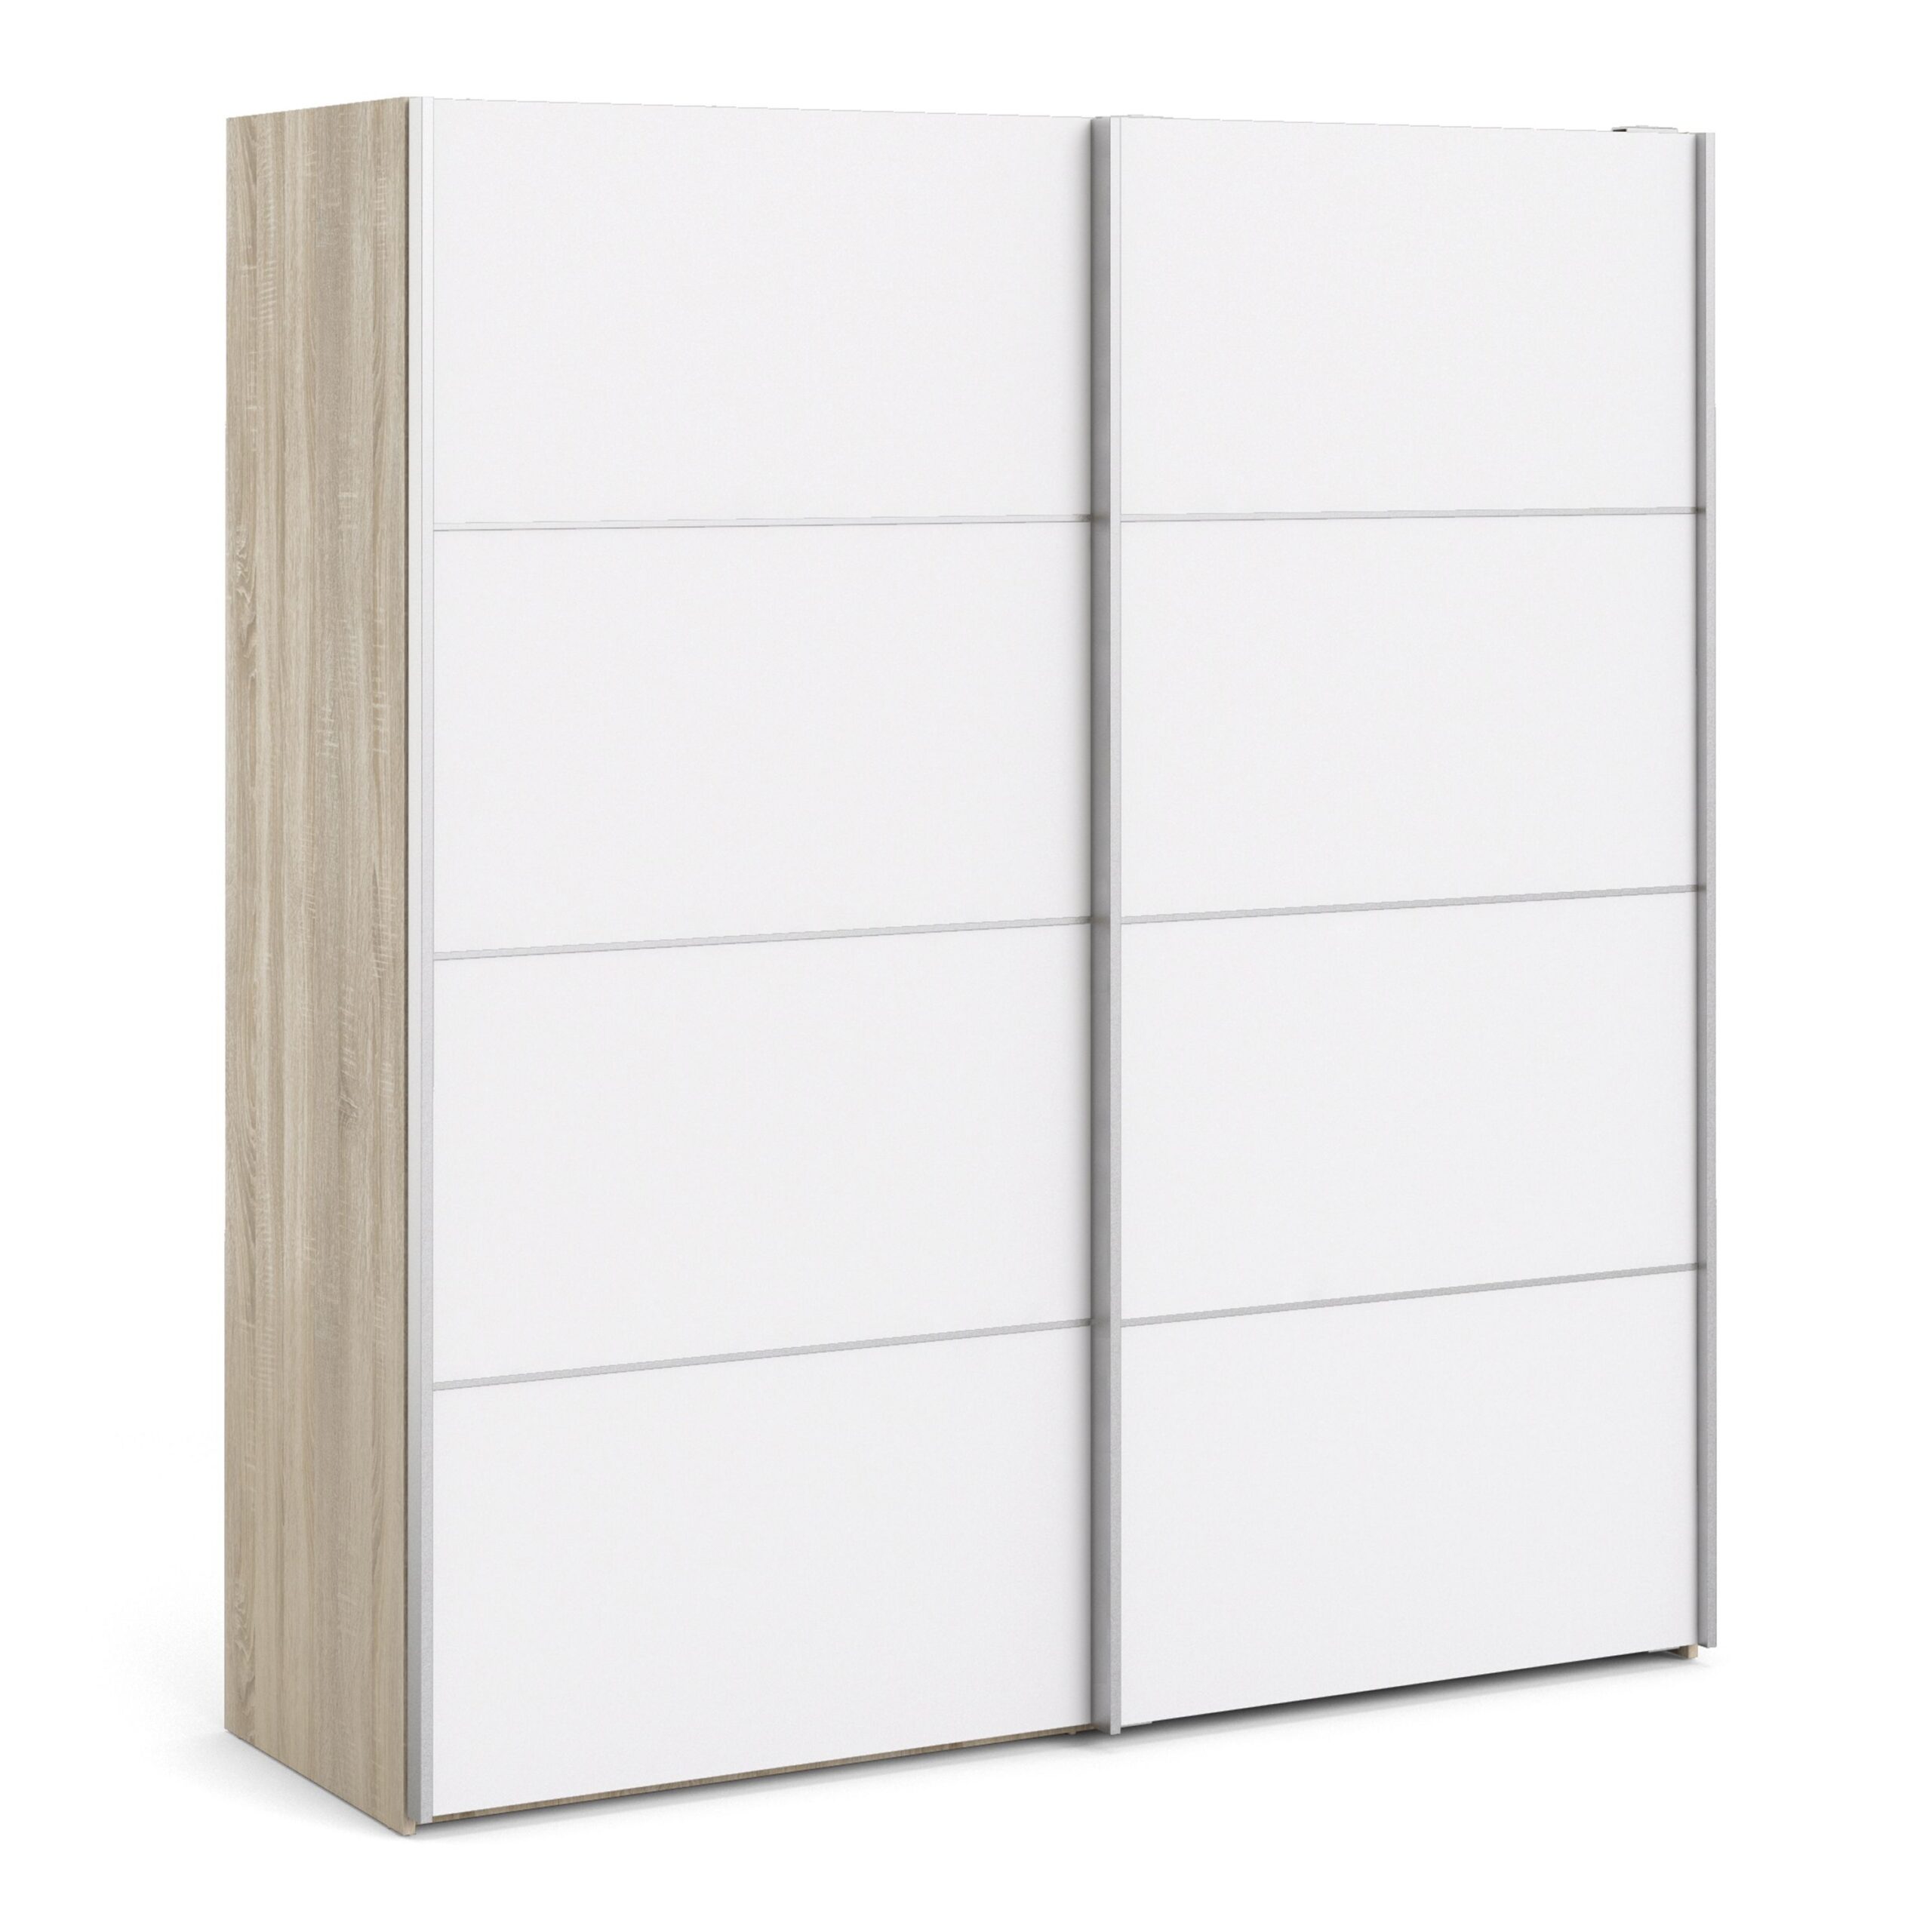 Phillipe Wardrobe Oak White Doors Two Shelves